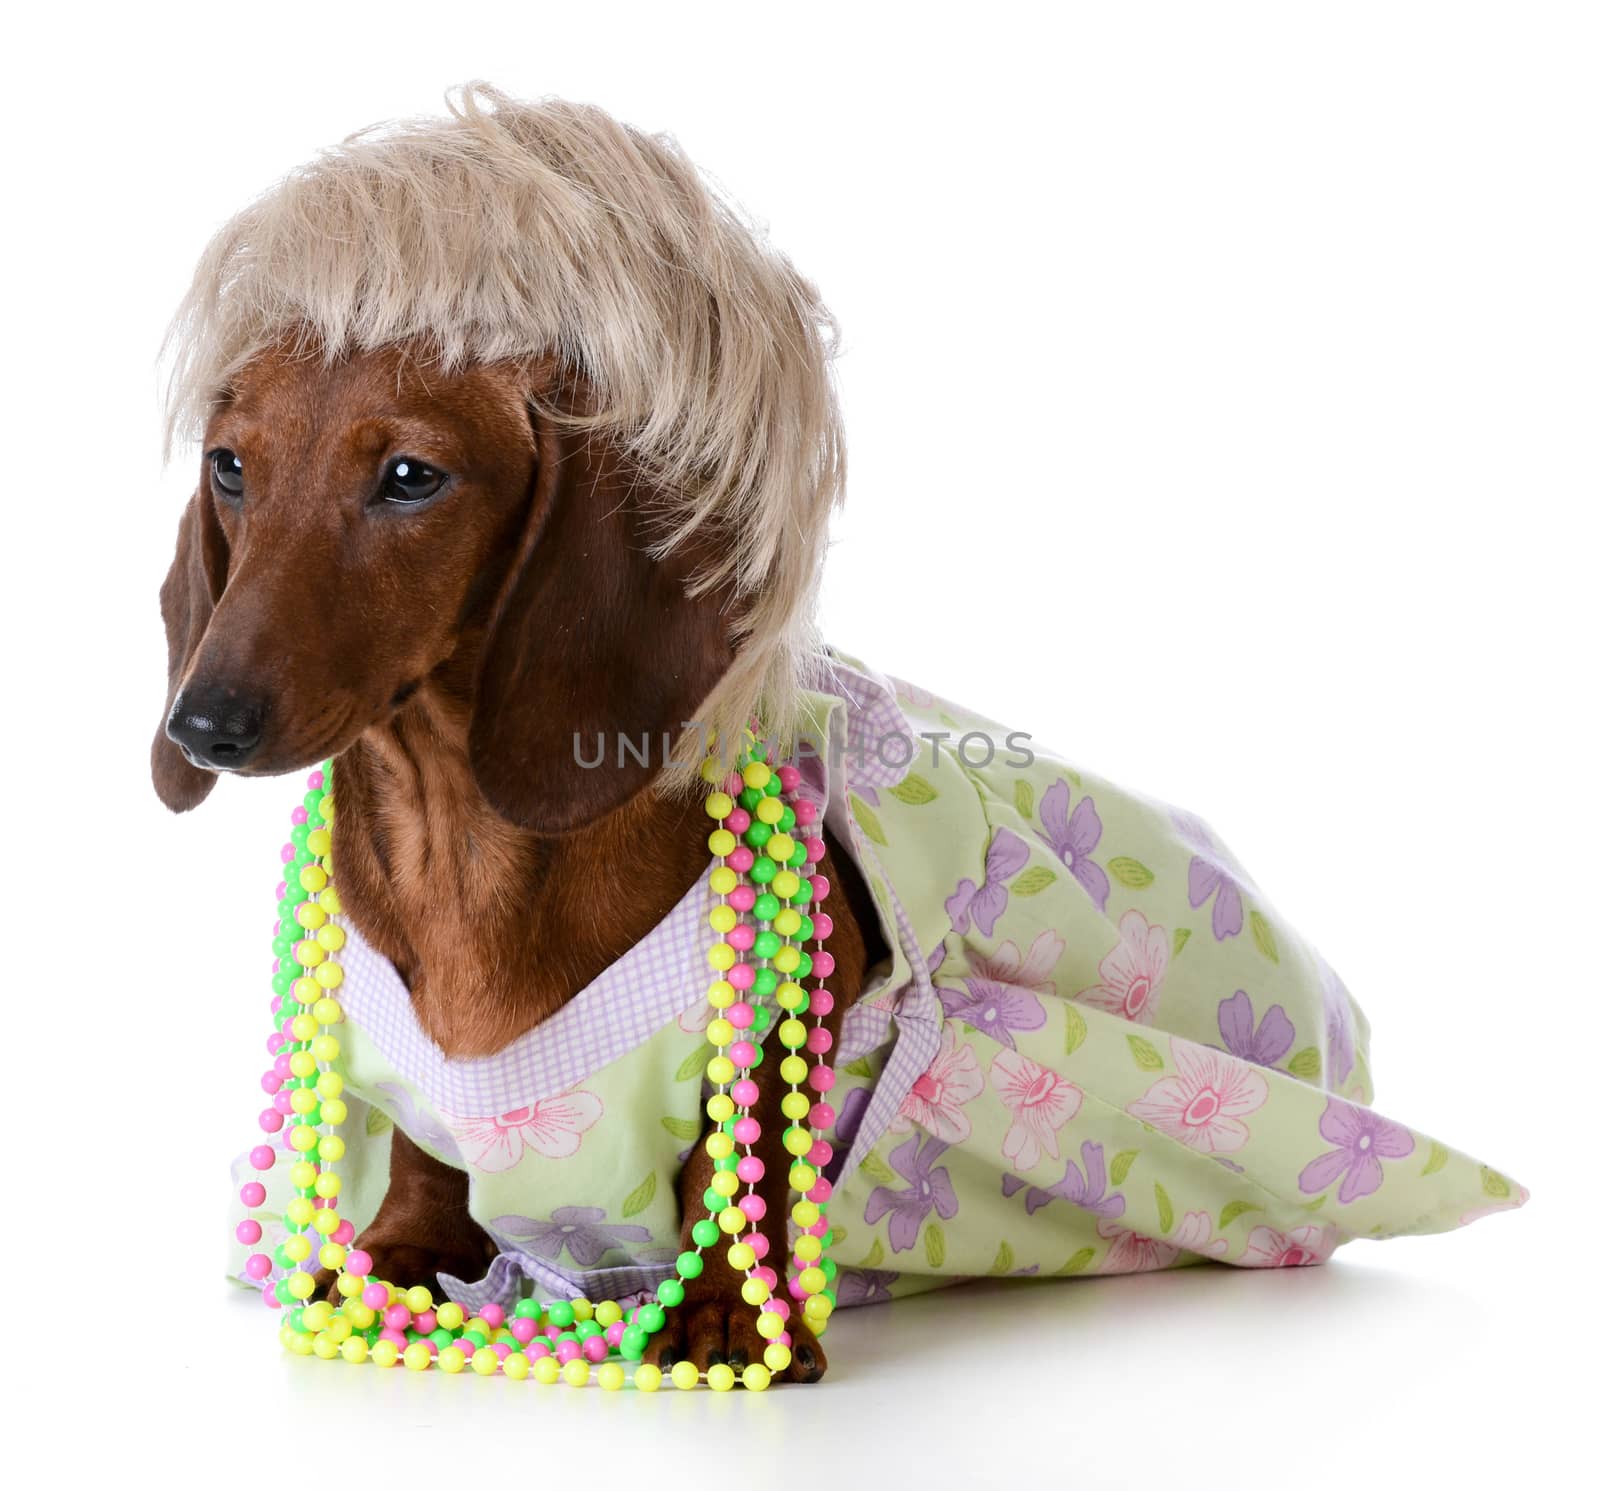 female dog - miniature dachshund wearing wig and clothing on white background